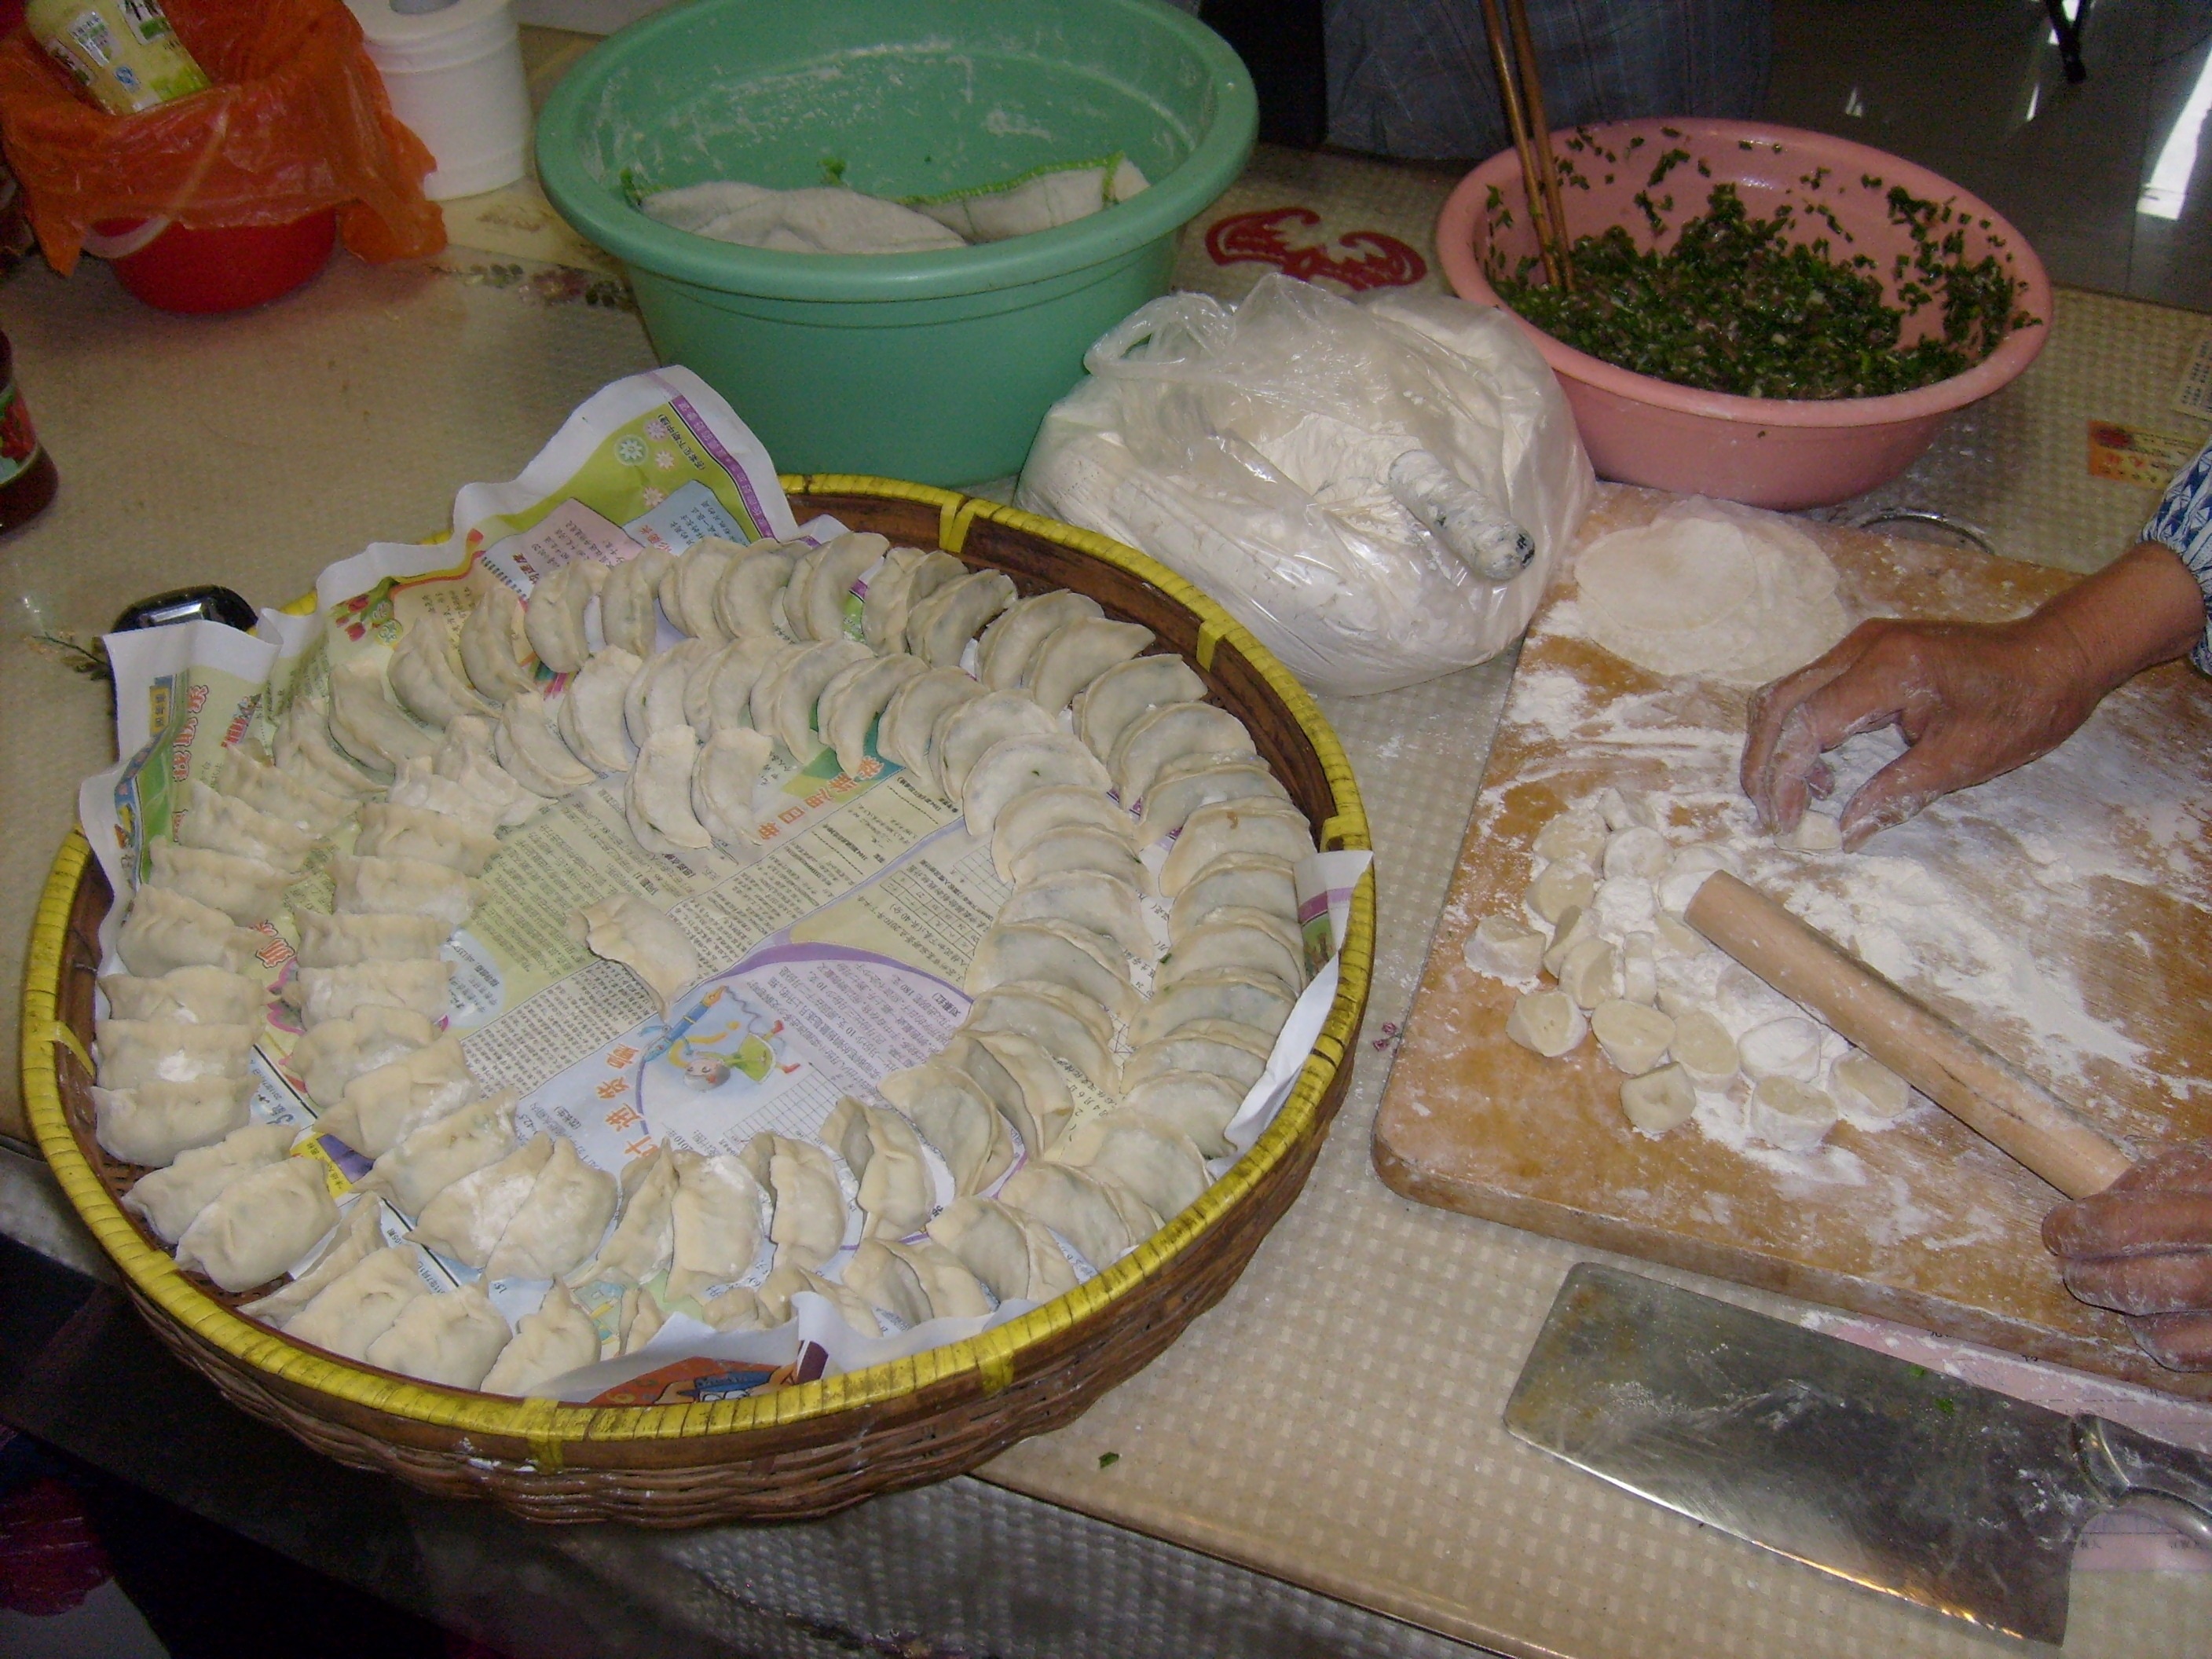 dumplings in brown wicker basket